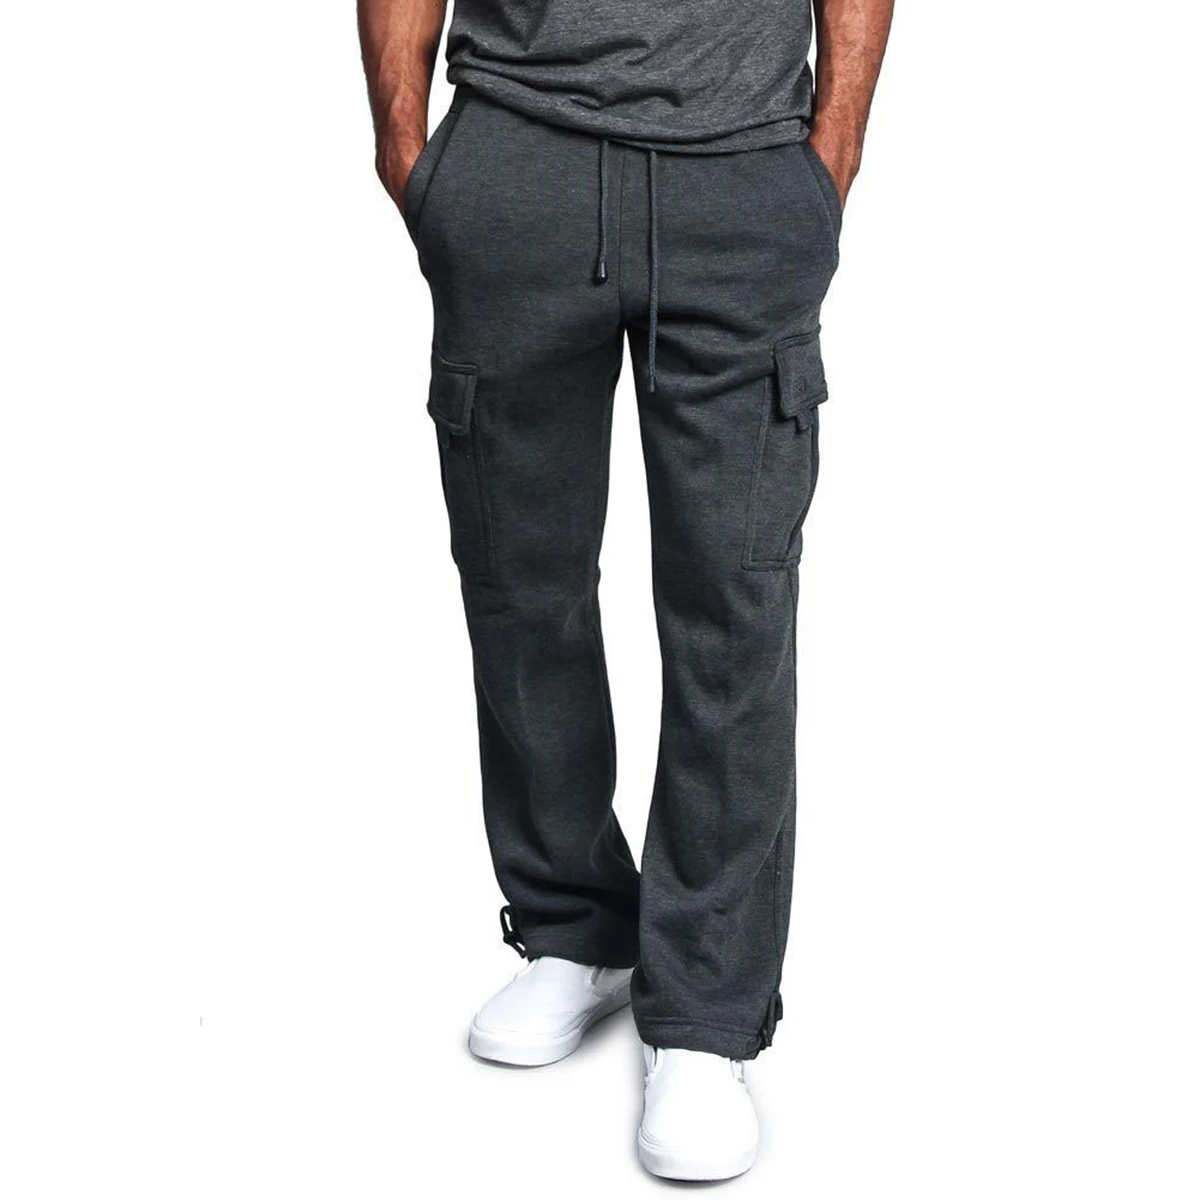 Новые летние спортивные штаны для спортзала обувь для бега мужские тренировочные брюки бегунов мужские брюки фирменная одежда штаны для бодибилдинга M-4XL - Цвет: Dark Grey